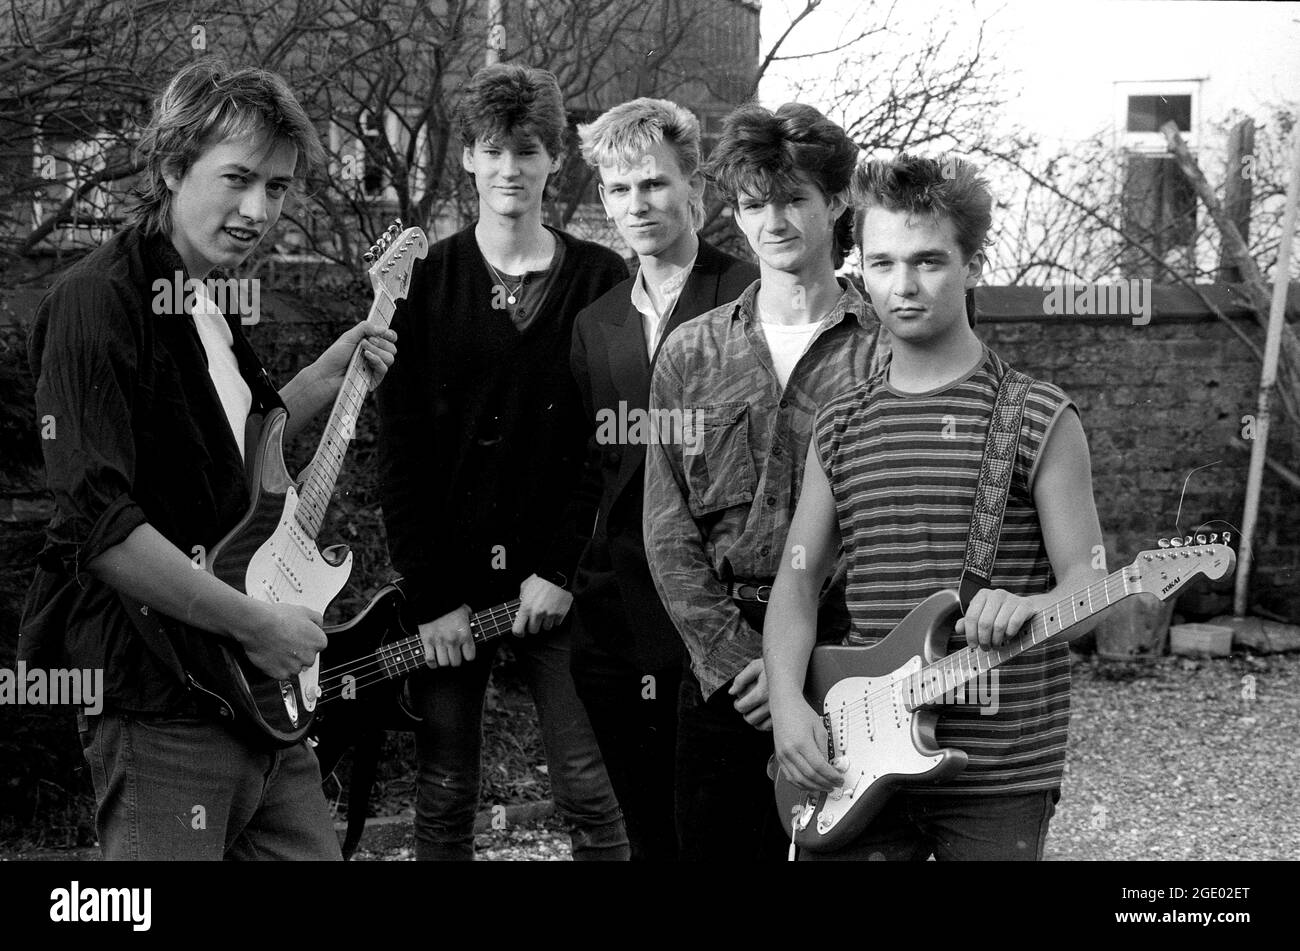 Membres du groupe des adolescents Yorkshire, Angleterre, Grande-Bretagne, Royaume-Uni 1985 Banque D'Images